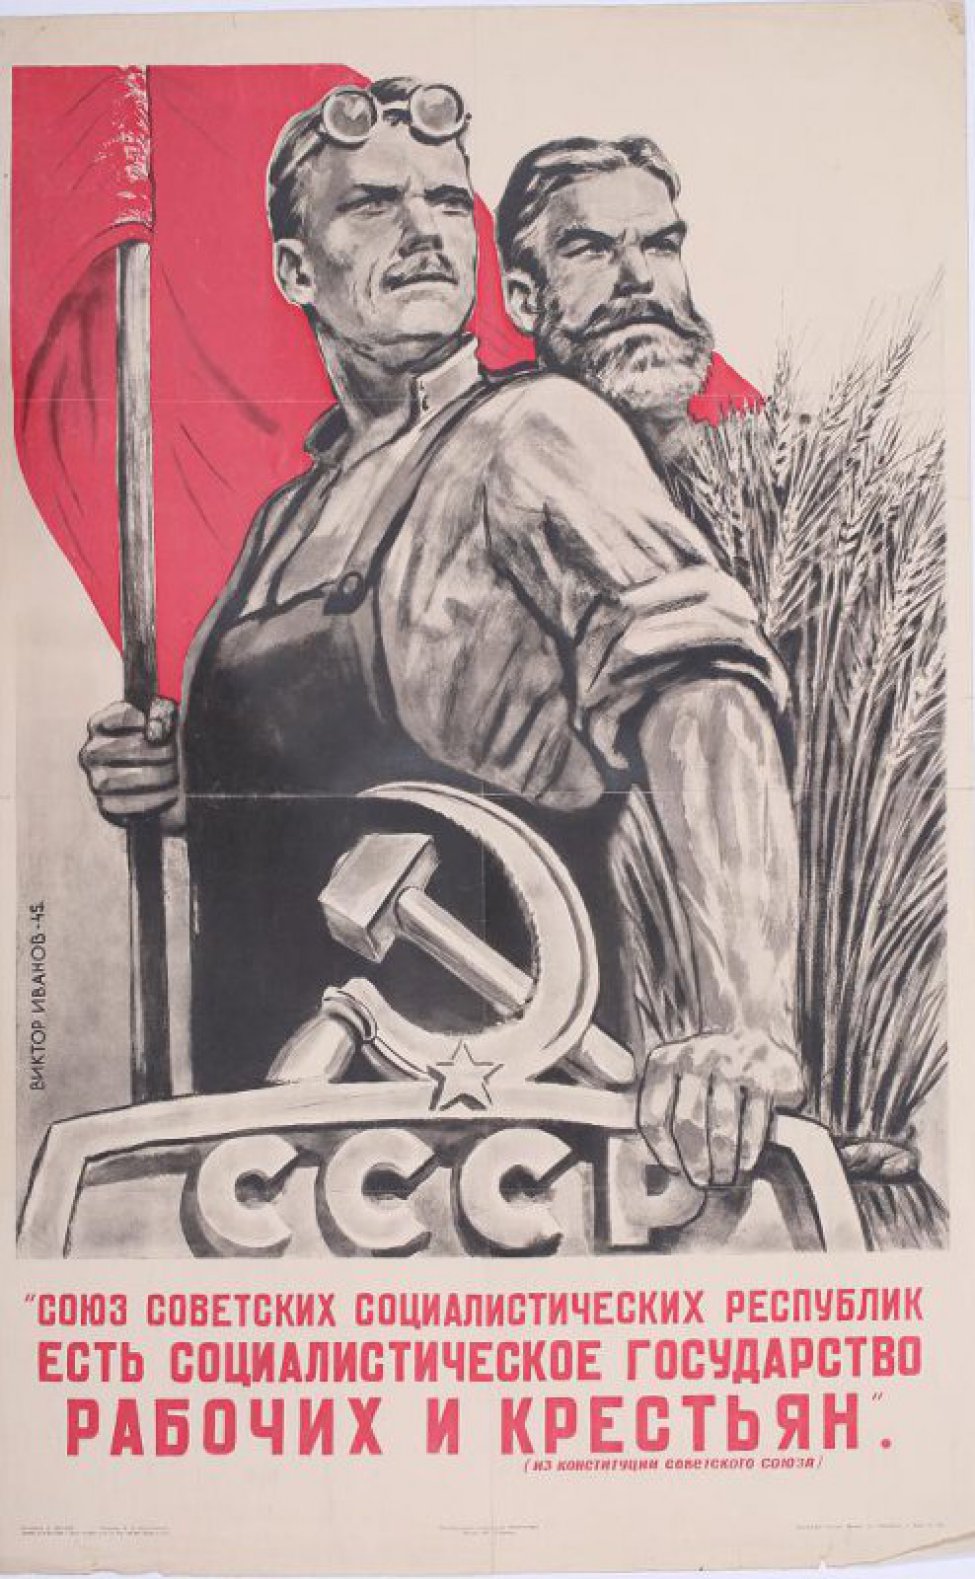 На фоне красного знамени - рабочий , стоящий влево с прямо повёрнутой головой, левой рукой он держит древко знамени, правой - опирается на раму с надписью - "СССР", с серпом и молотом и звездой. За спиной рабочего - крестьянин со снопом. Внизу текст.